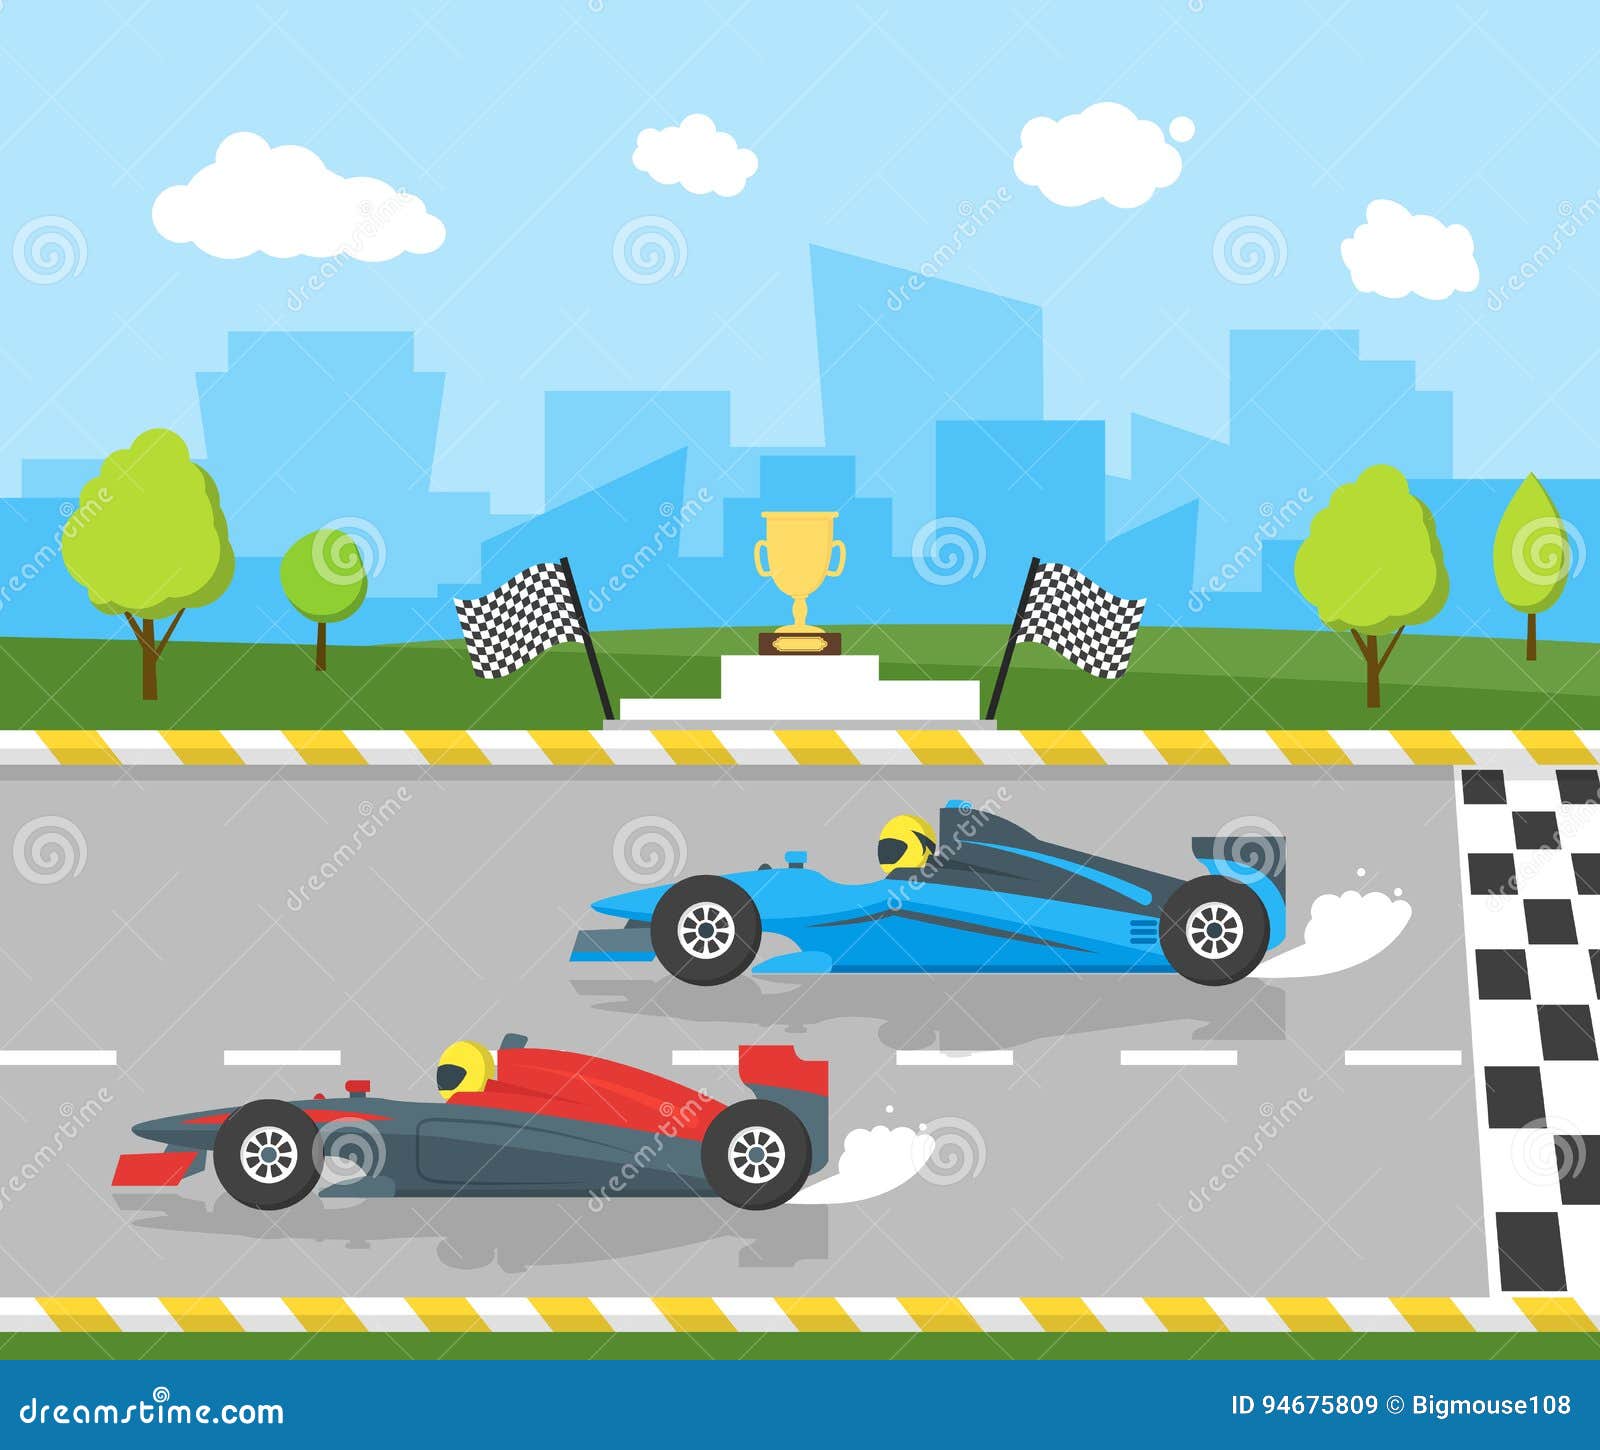 Competição de corridas de carros de rua, ilustração vetorial de